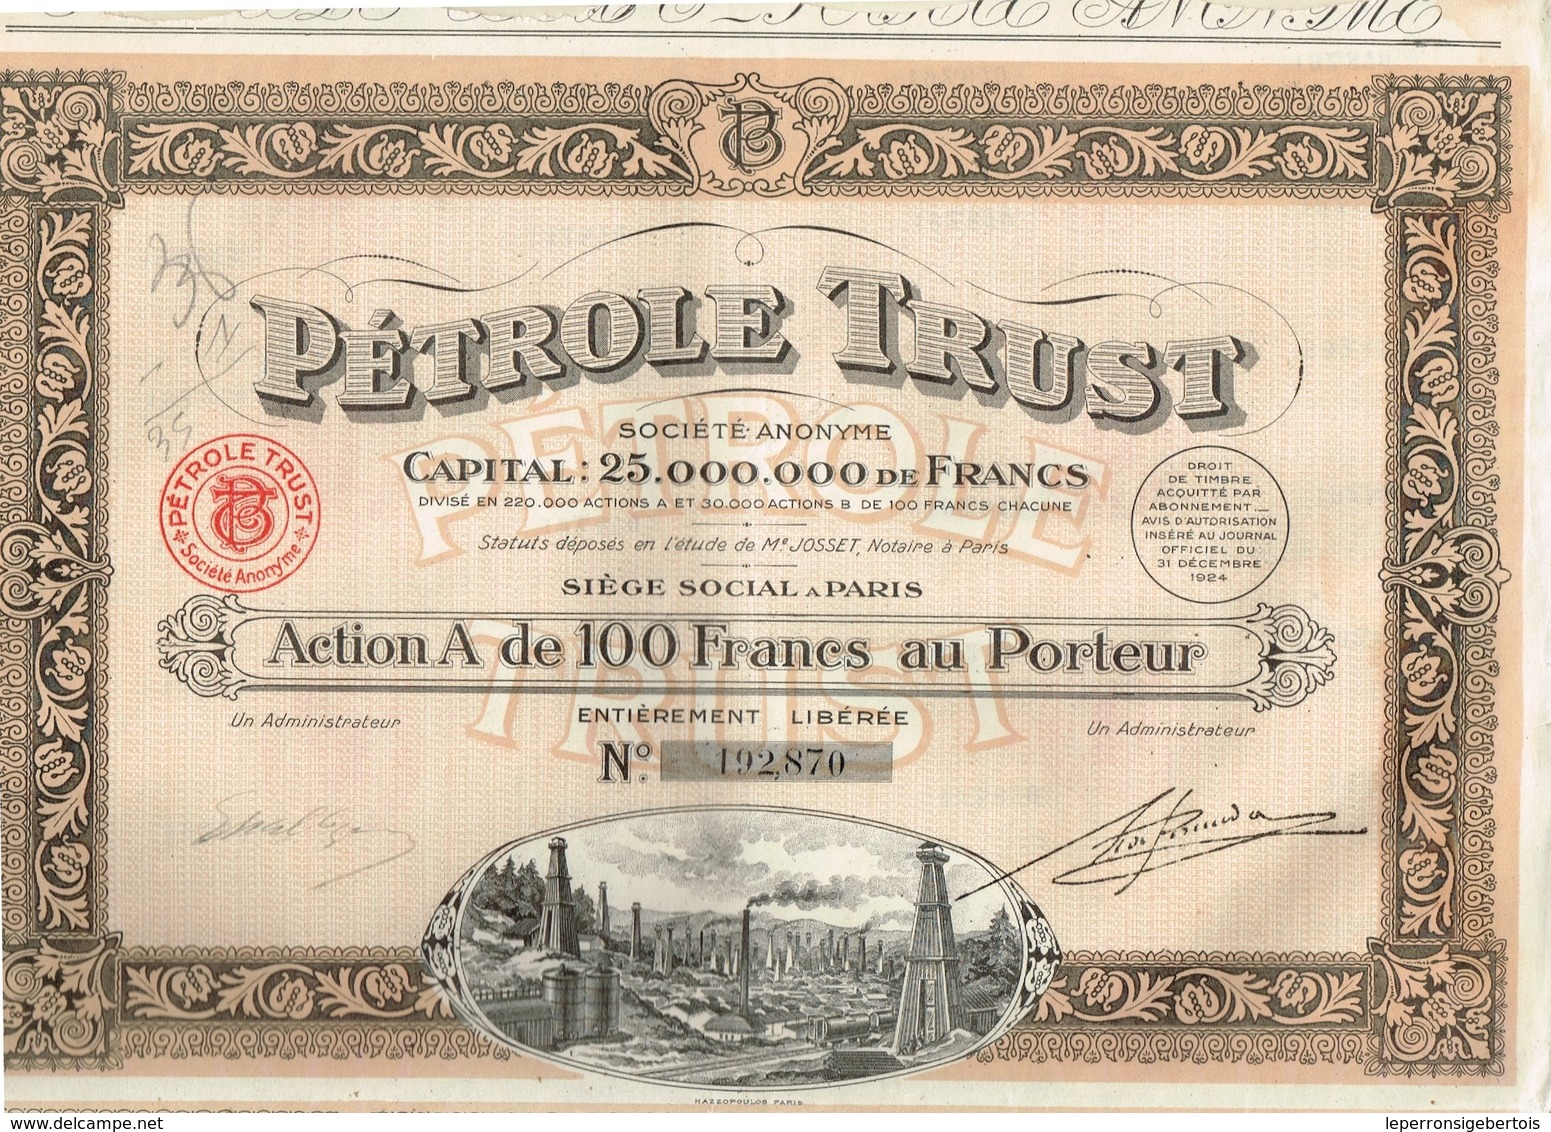 Action Ancienne - Pétrole Trust - Société Anonyme - Titre De 1924 - N°192870 - Pétrole